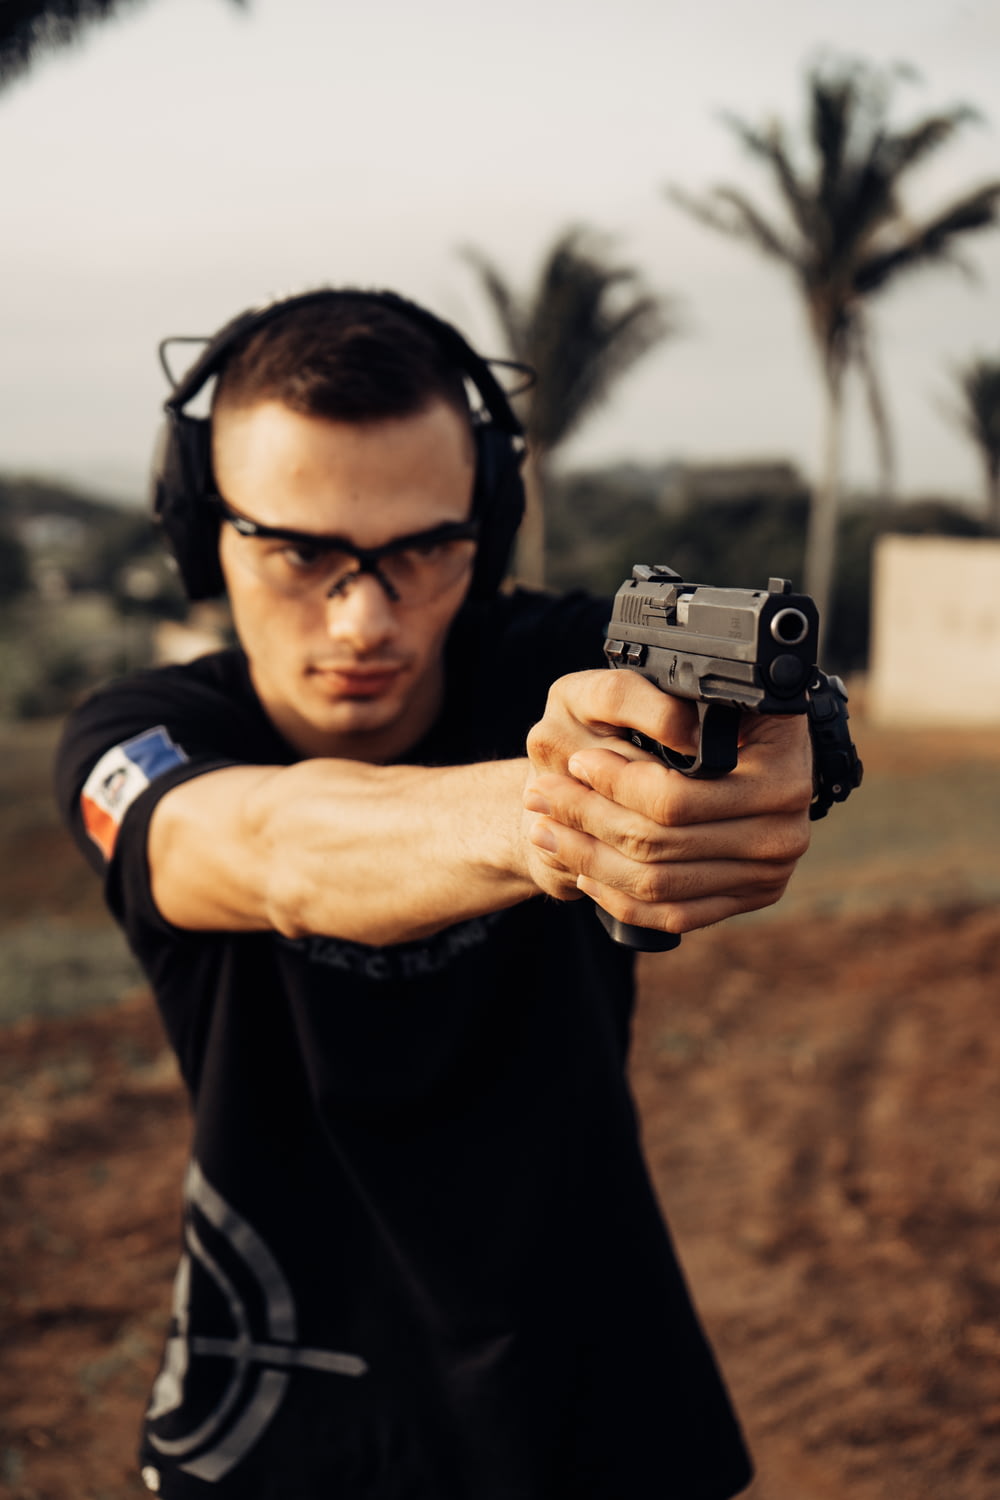 a man wearing headphones aiming a gun